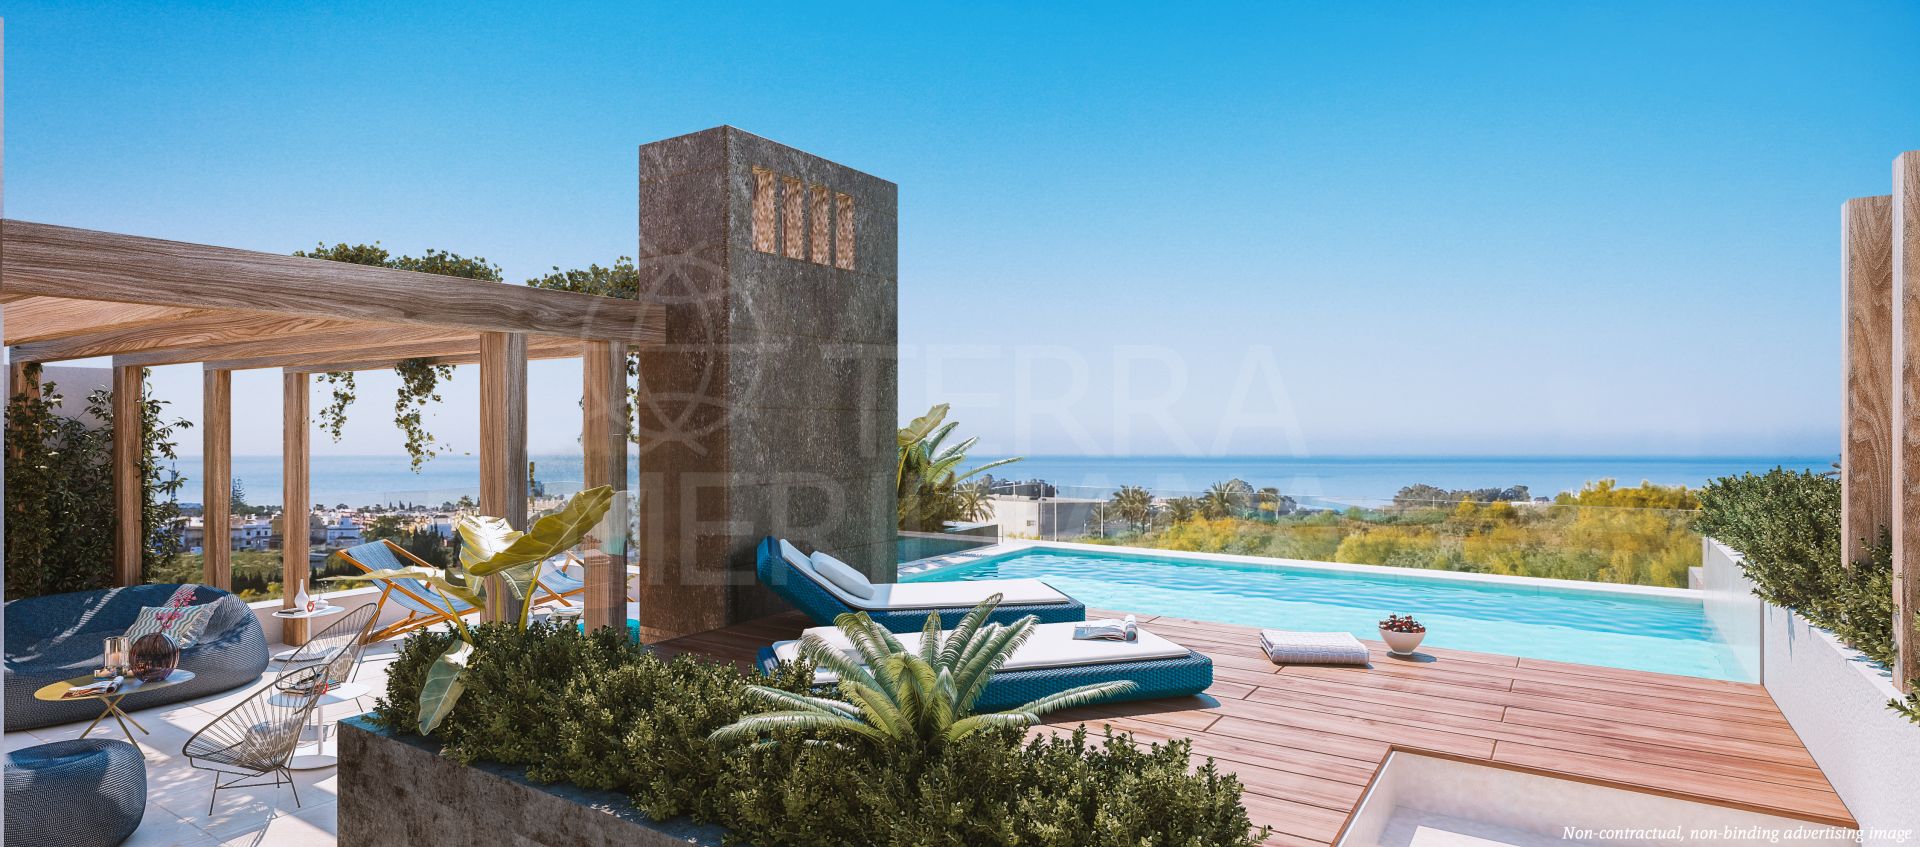 Casa semiadosada a estrenar con solarium y piscina en venta en La Lista, Río Real, Marbella Este